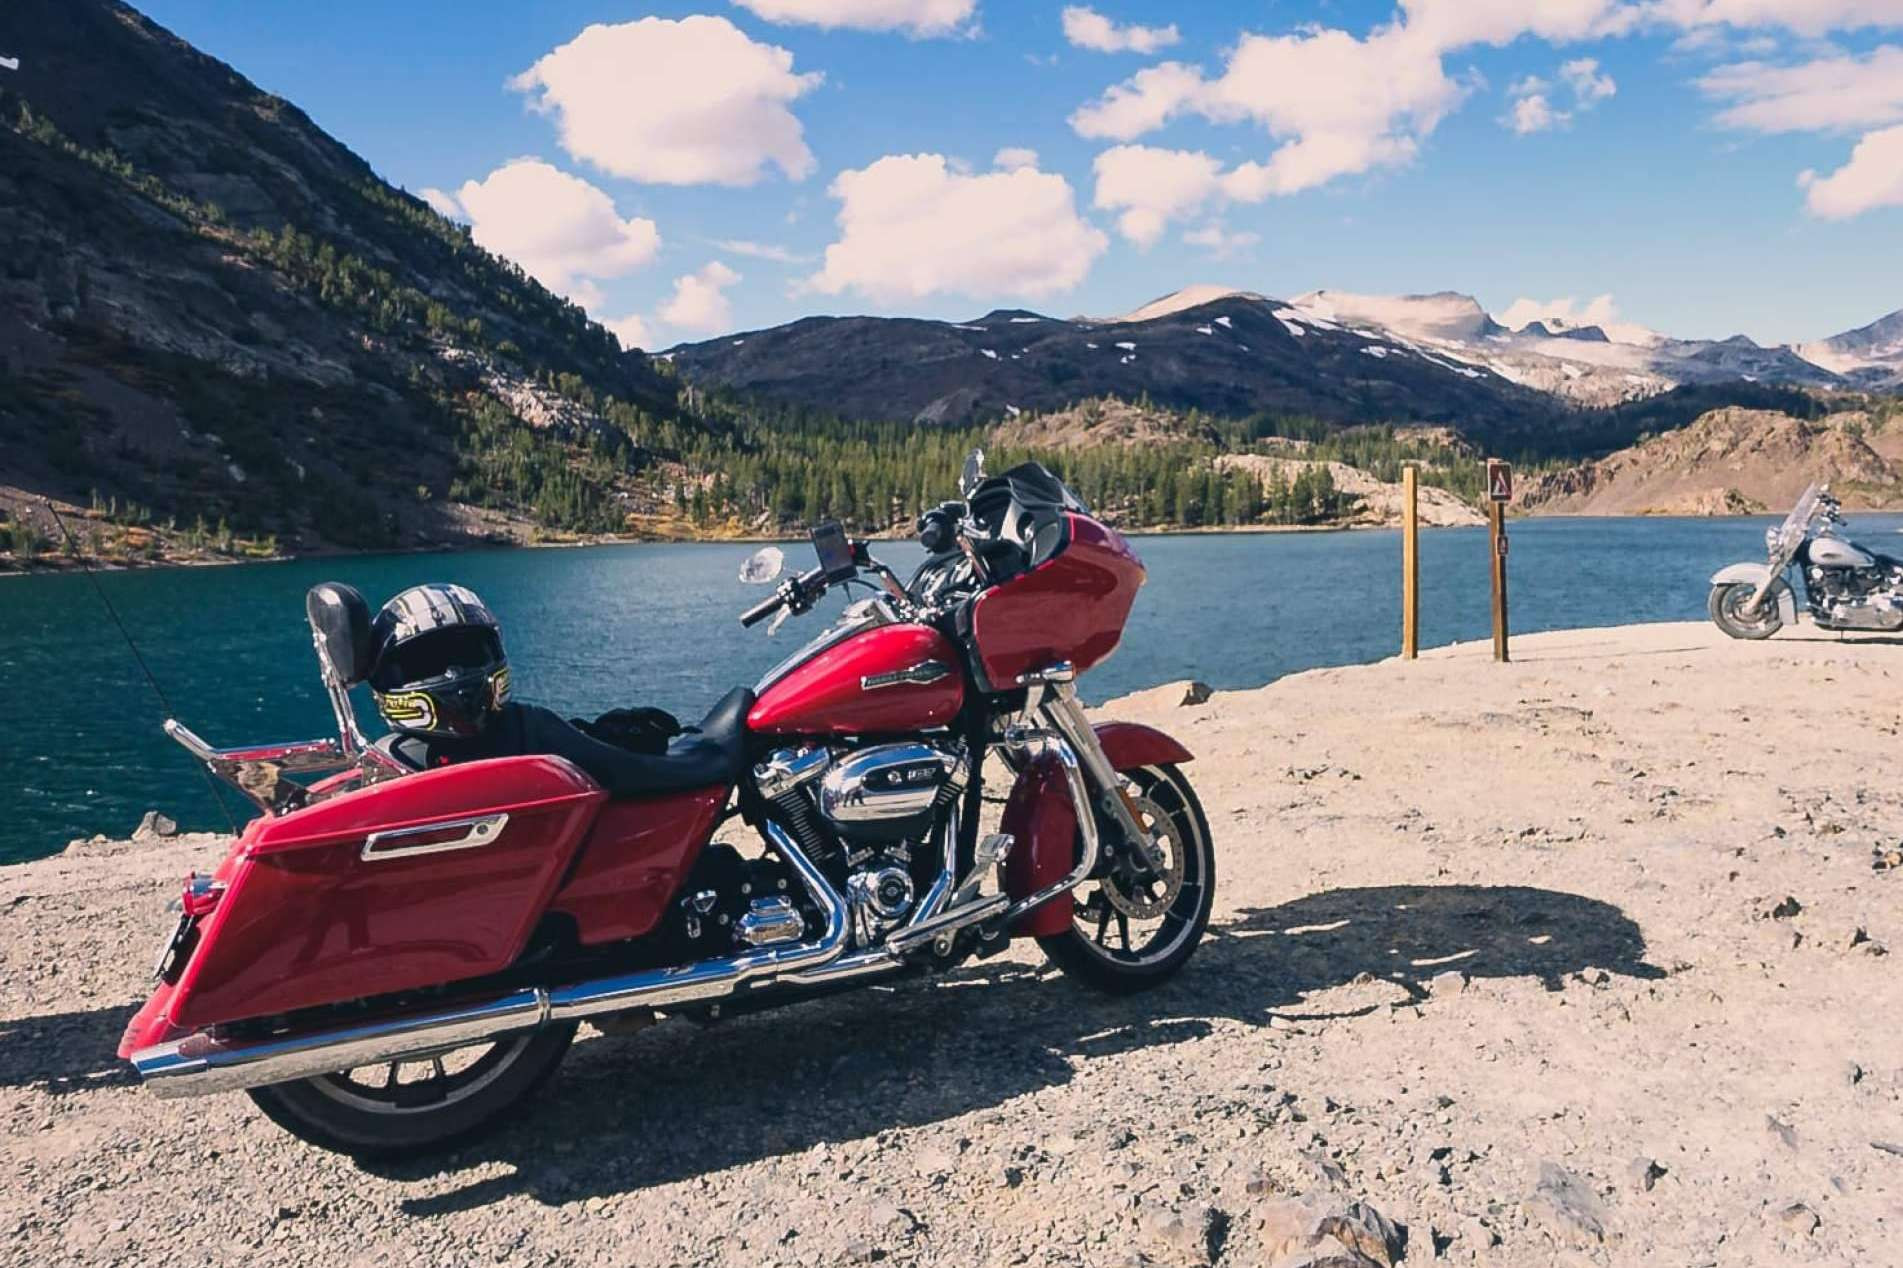  Recorrer en moto la Ruta 66 y Parques Nacionales para descubrir USA, con Motorbeach Viajes 